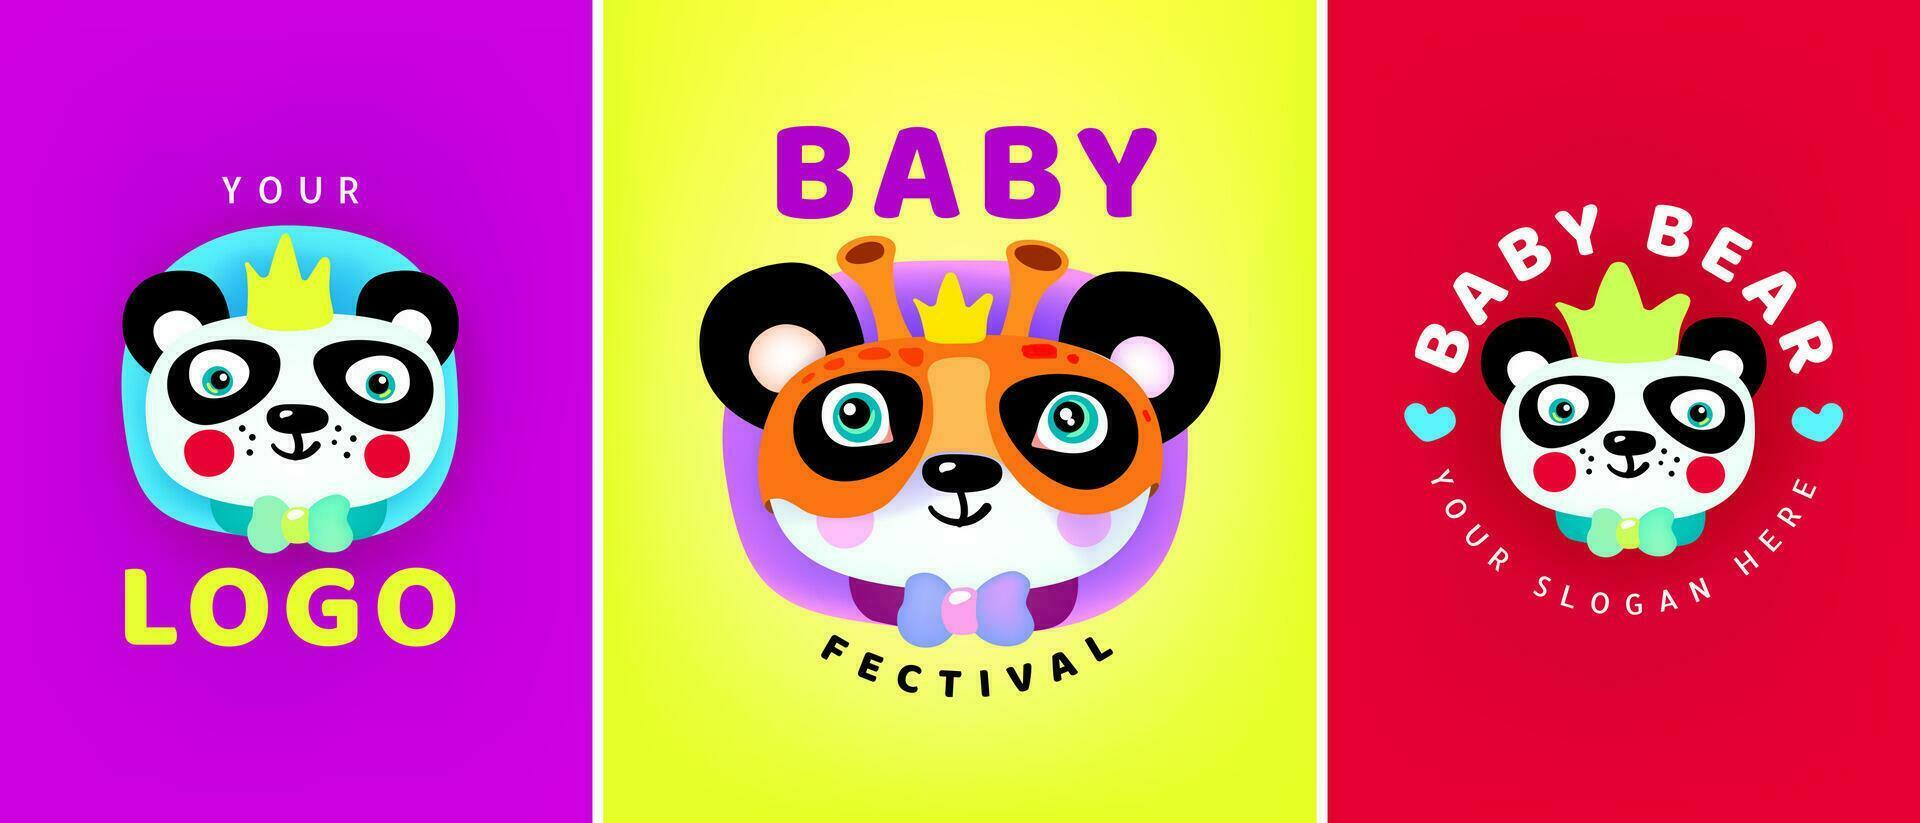 bebé festival . carnaval máscara festival. vector ilustración. logotipo